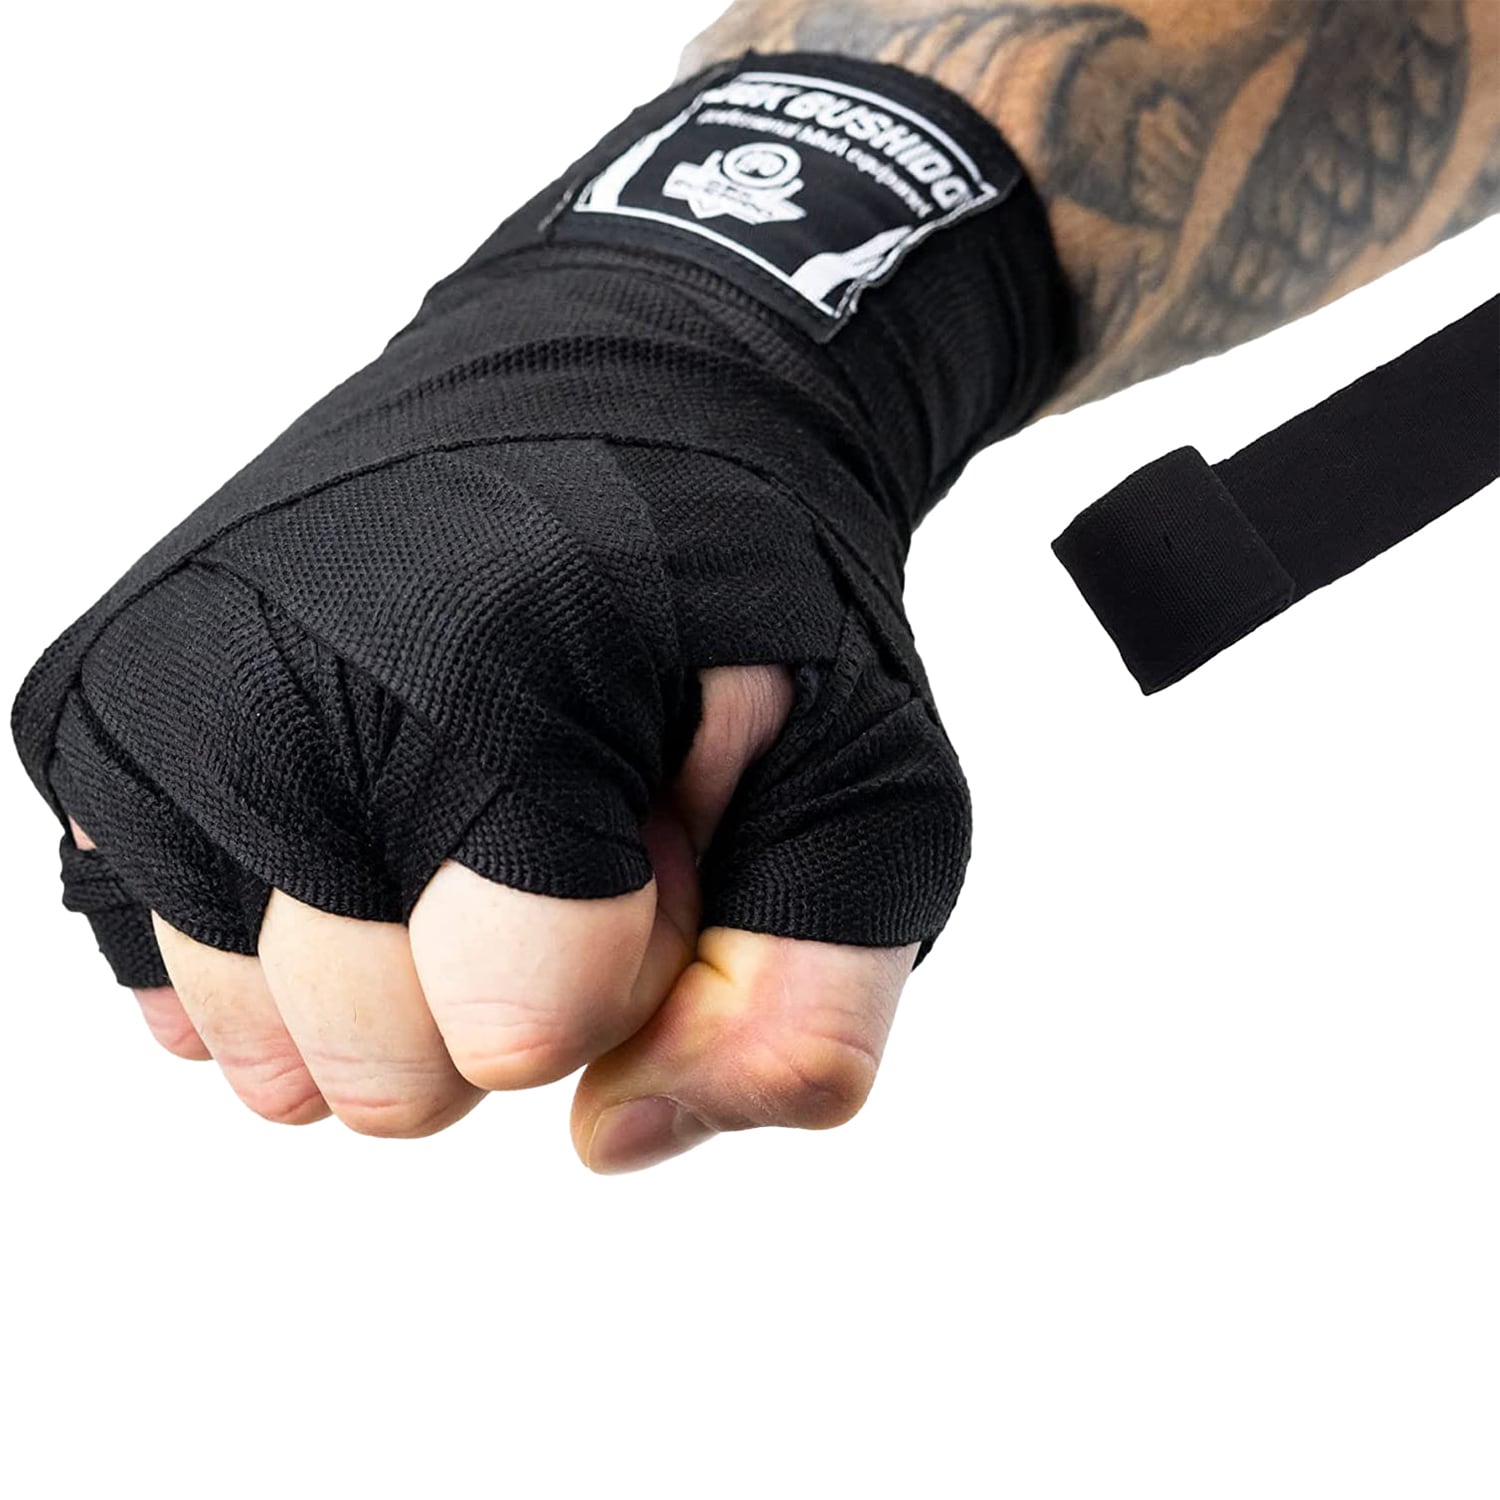 Bandaże bokserskie DBX Bushido na dłonie i nadgarstki 2 x 2 m - Czarne